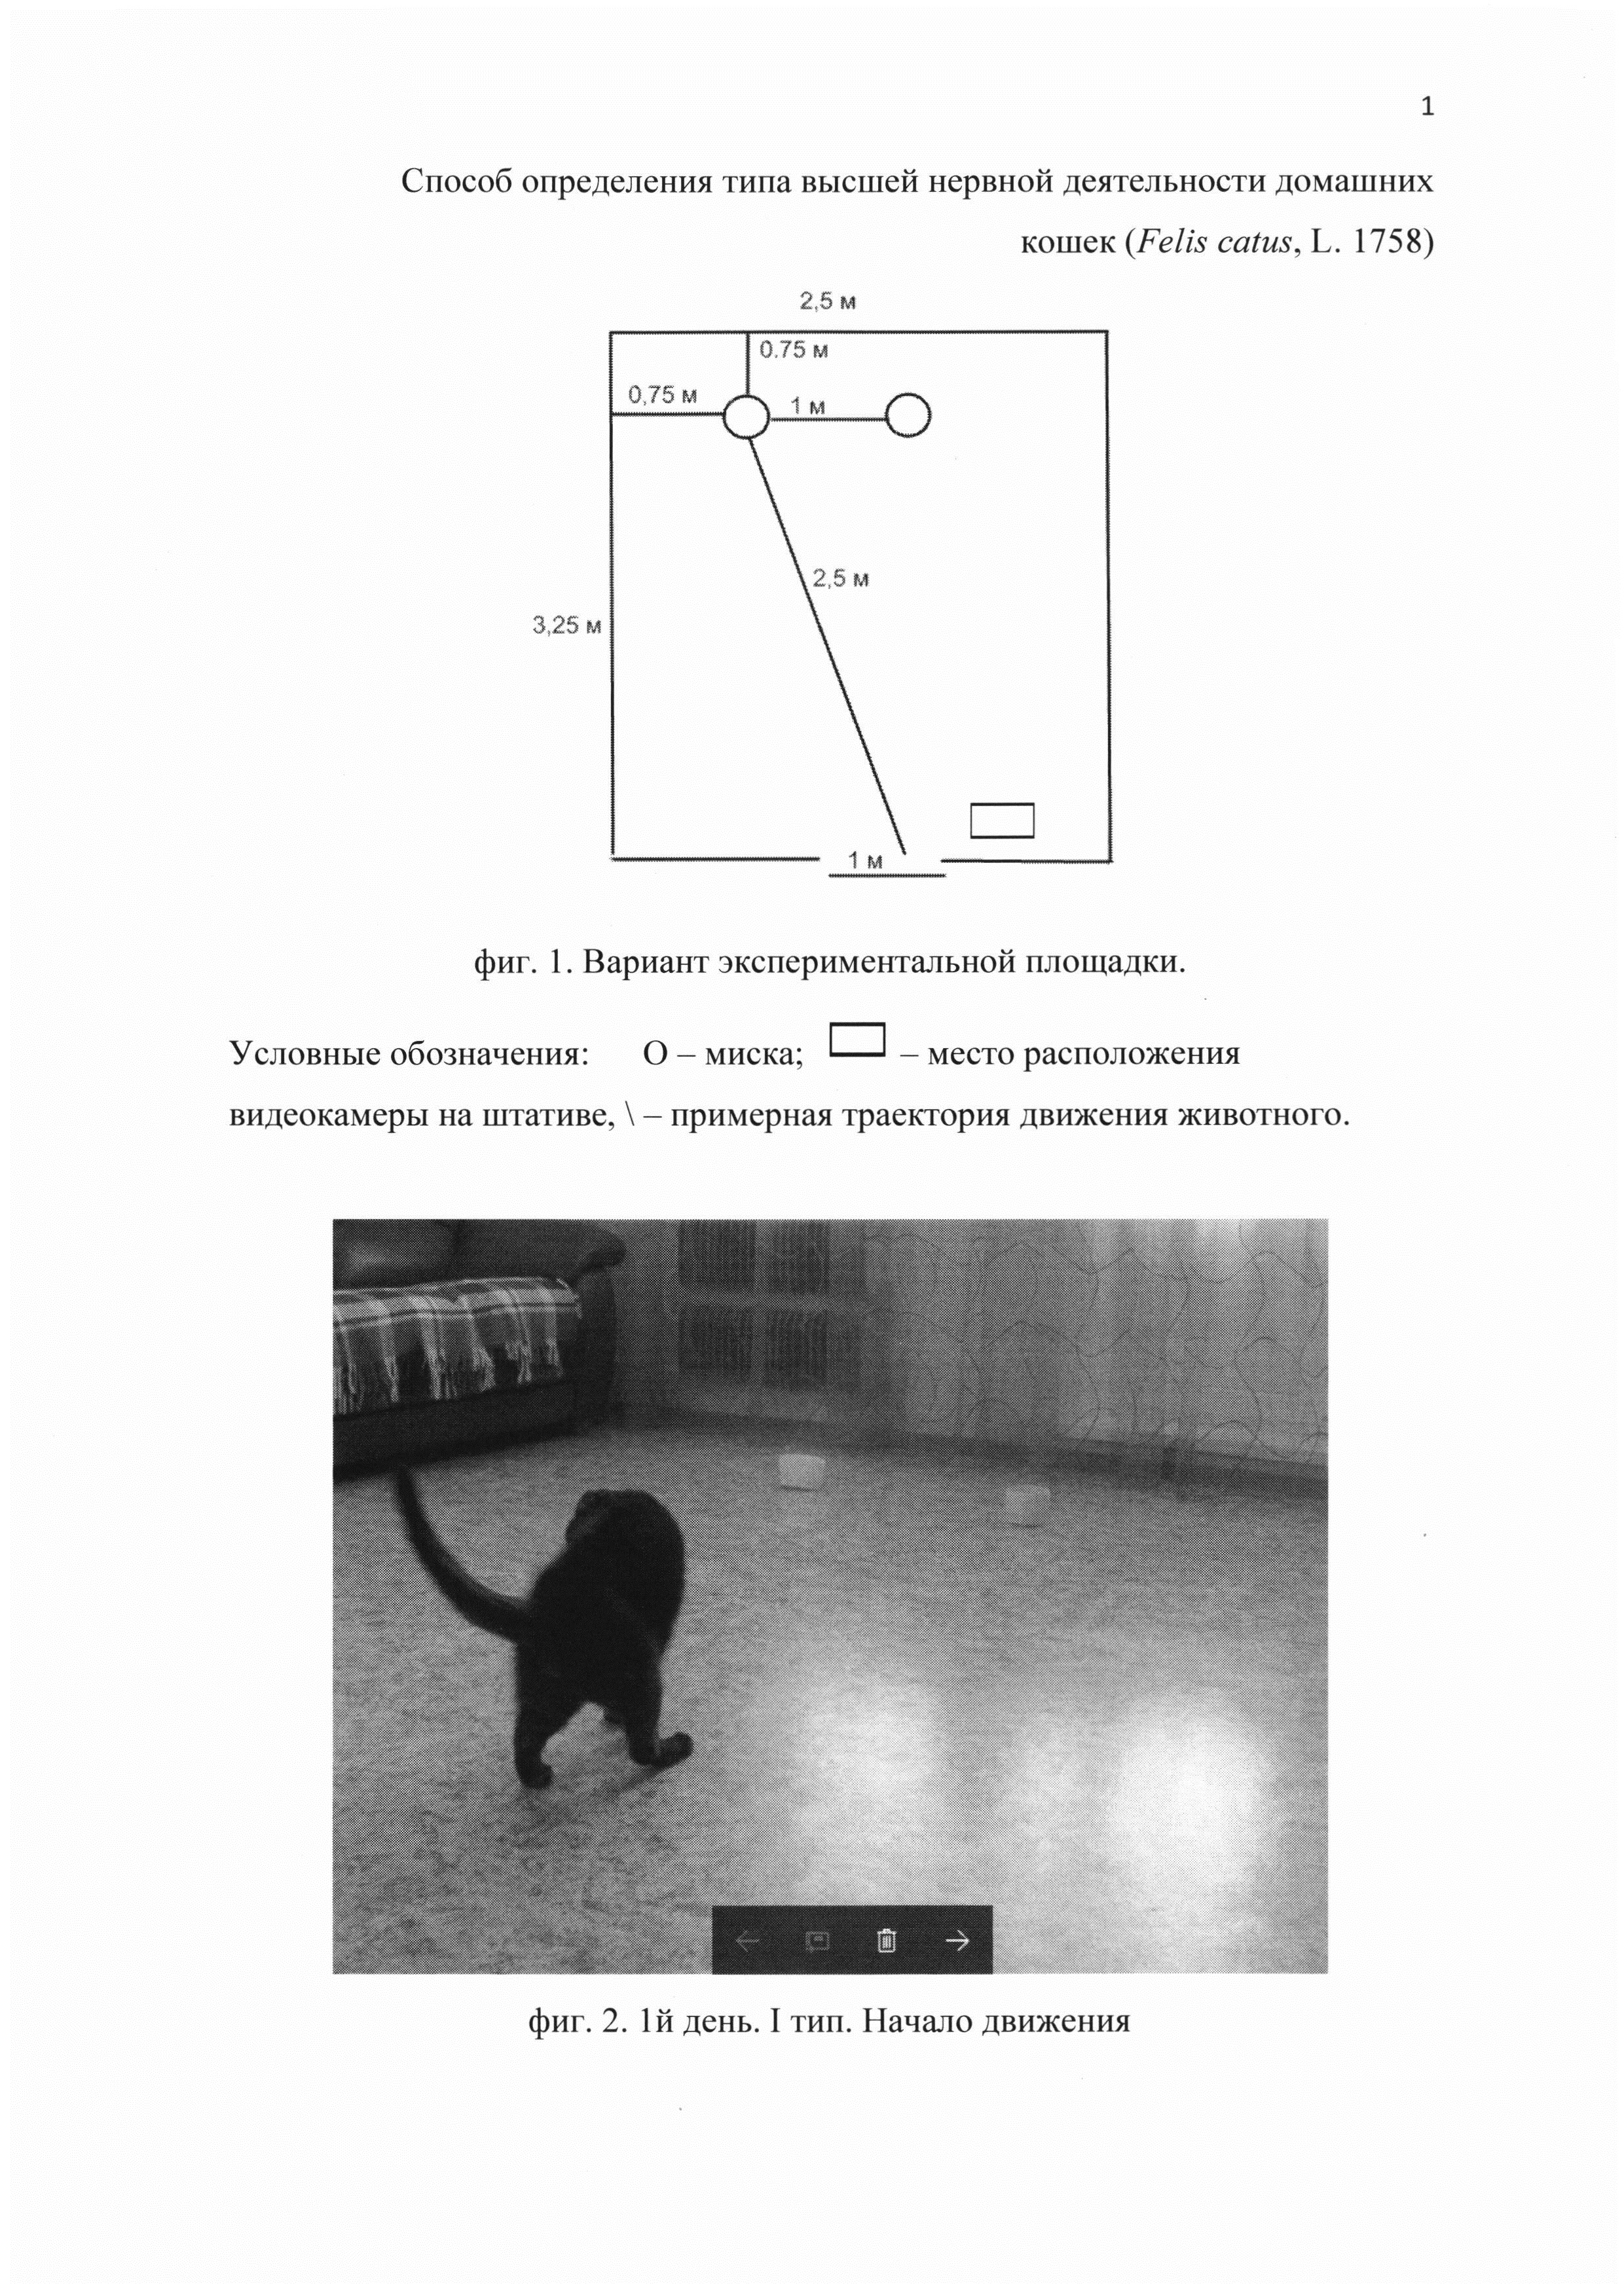 Способ определения типа высшей нервной деятельности домашних кошек (Felis catus, L. 1758)